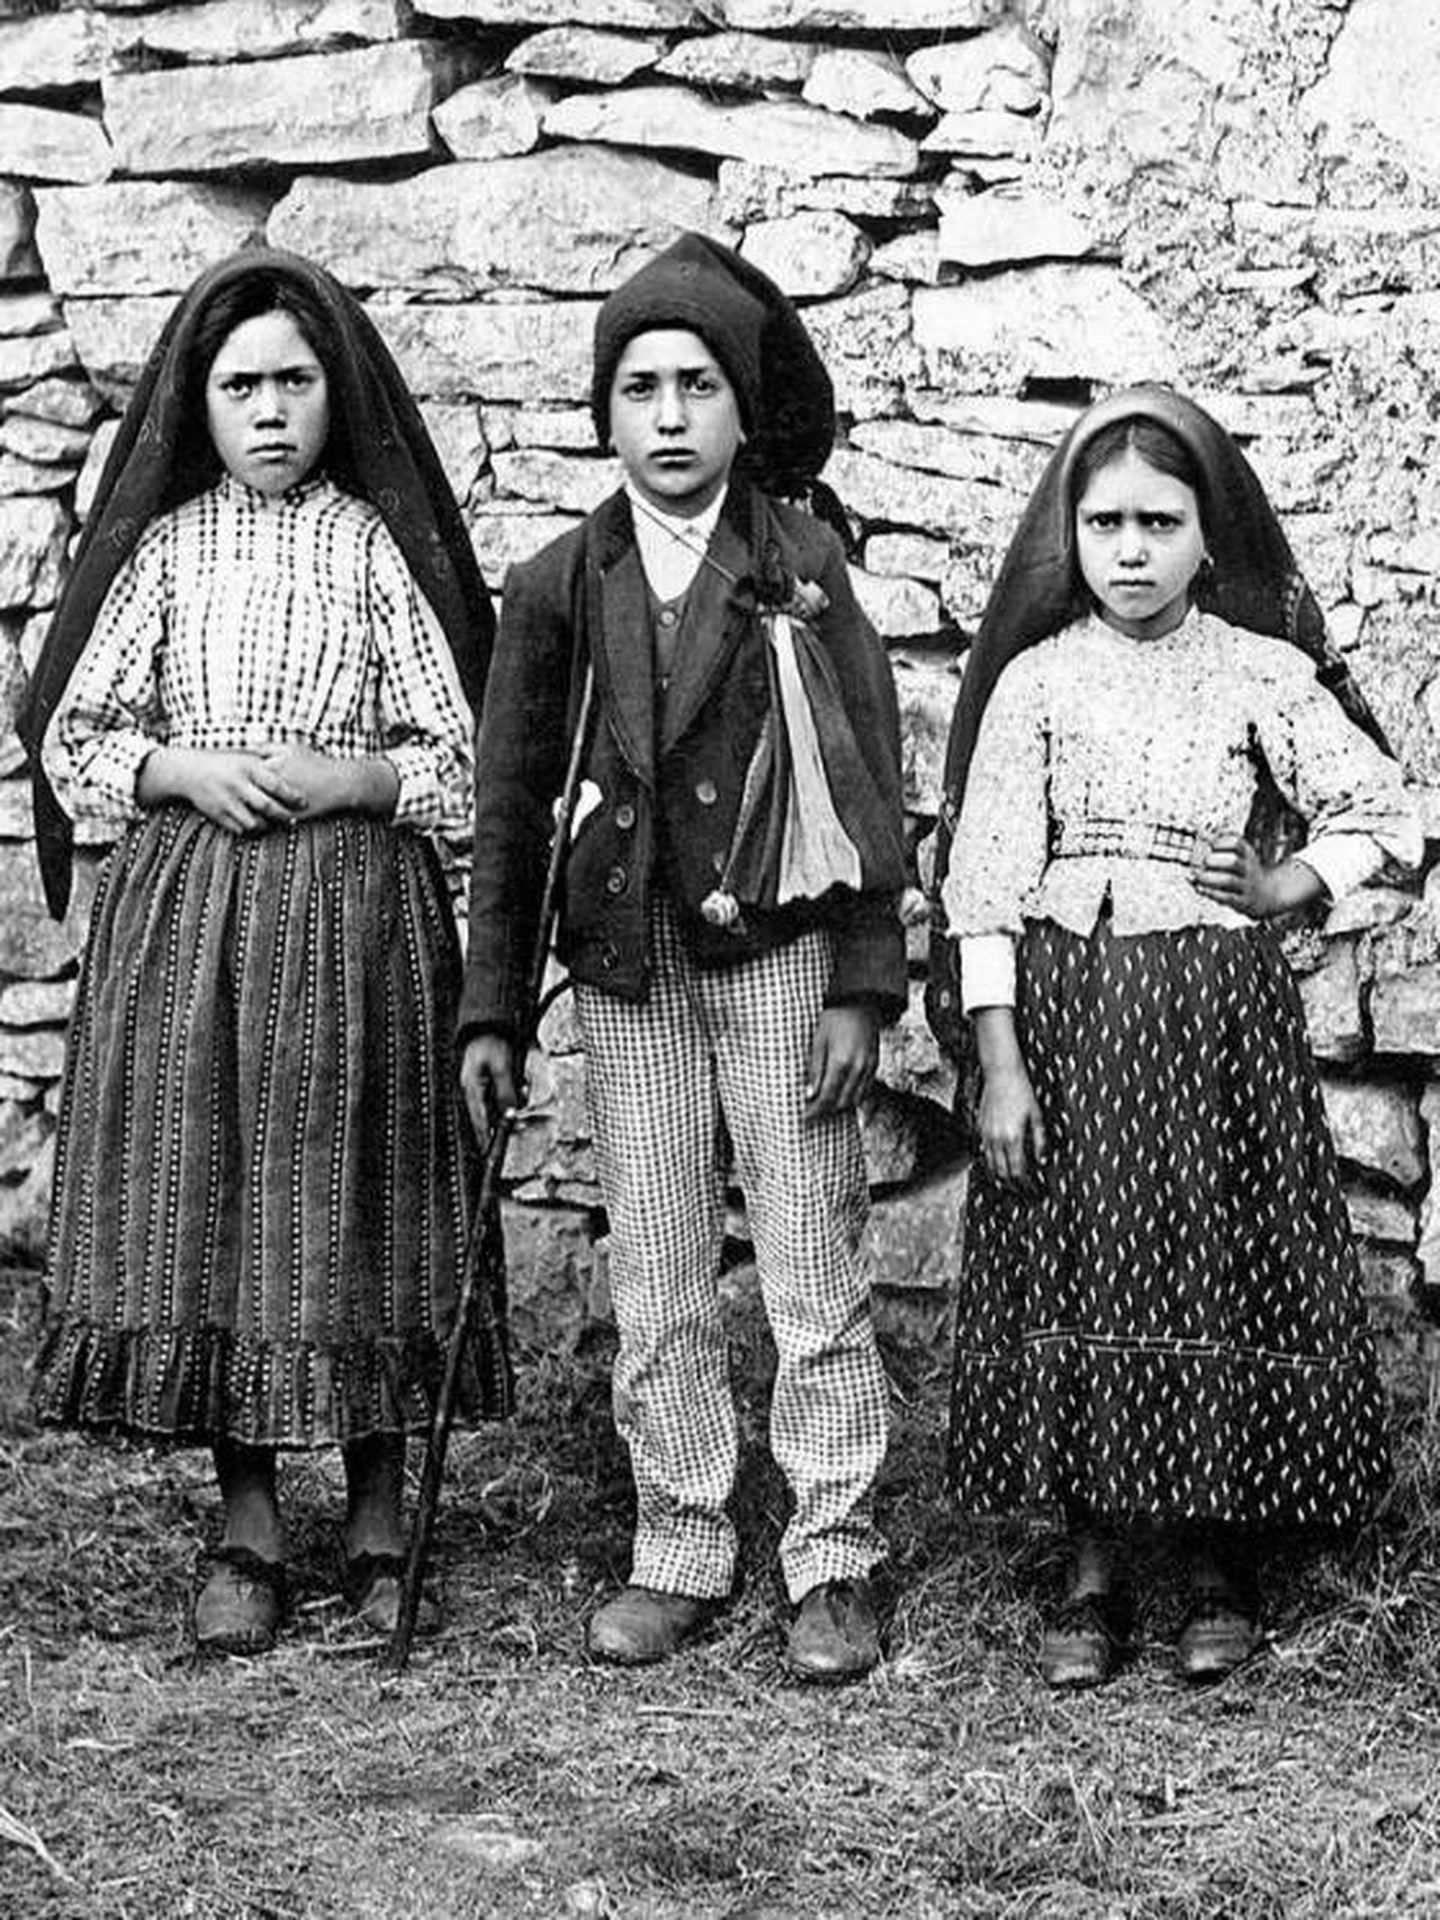 Los tres pastorcitos de Fátima: Lucía dos Santos (izq.), y sus primos, Francisco Marto (centro) y Jacinta Marto (dcha.) Foto: CC